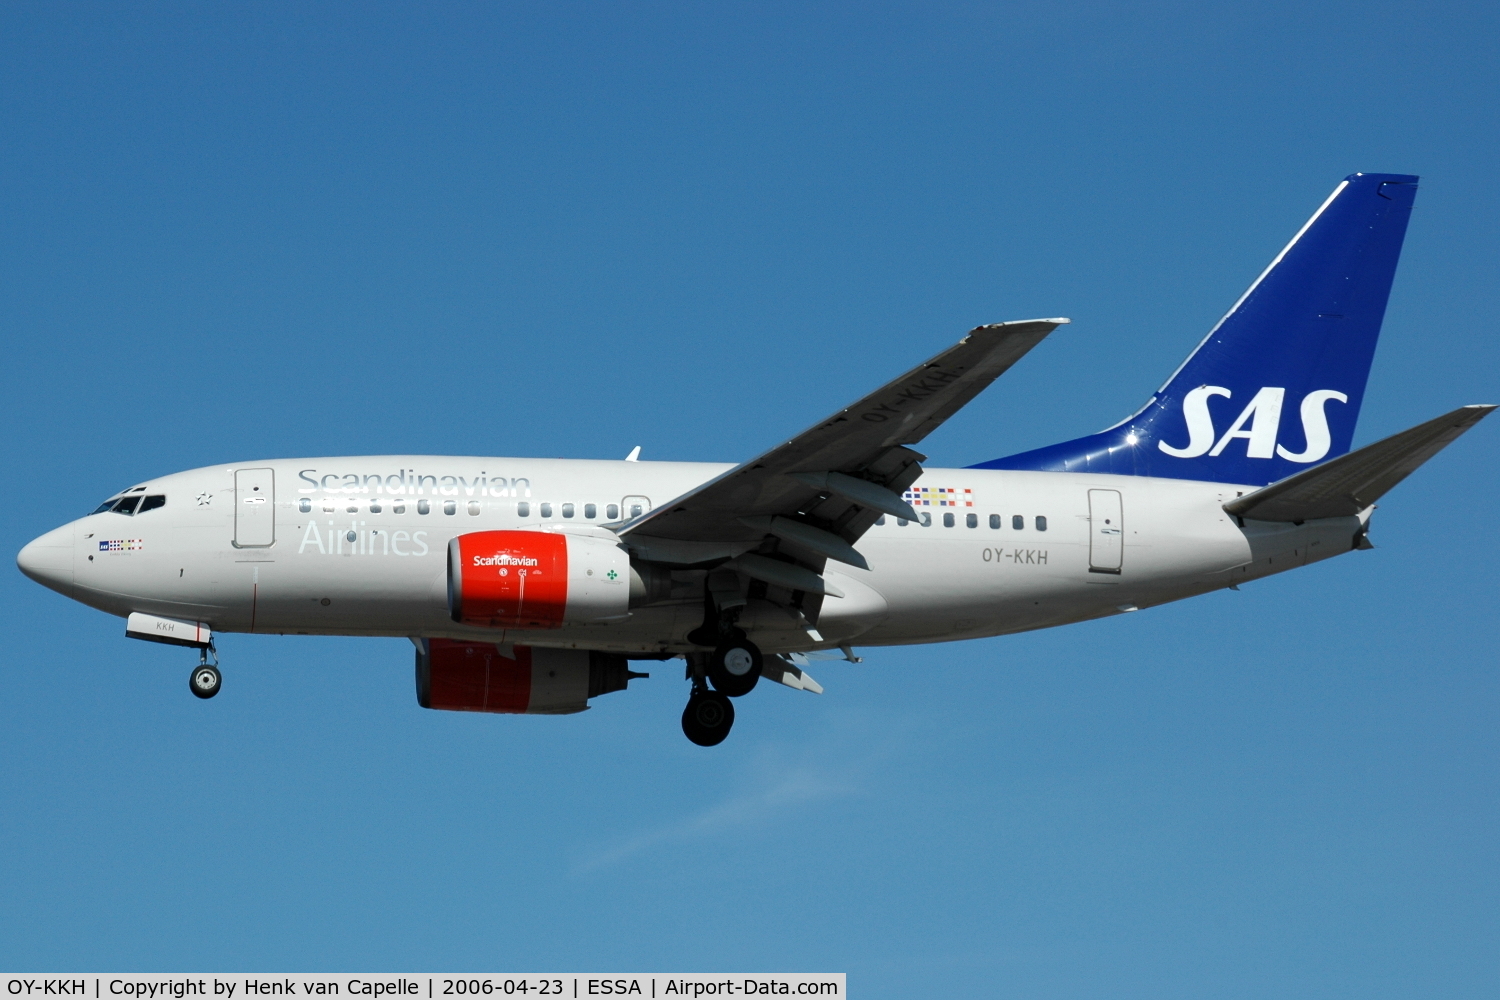 OY-KKH, 1999 Boeing 737-683 C/N 28301, Scandinavian Airlines Boeing 737-600 approaching Stockholm Arlanda airport, Sweden.